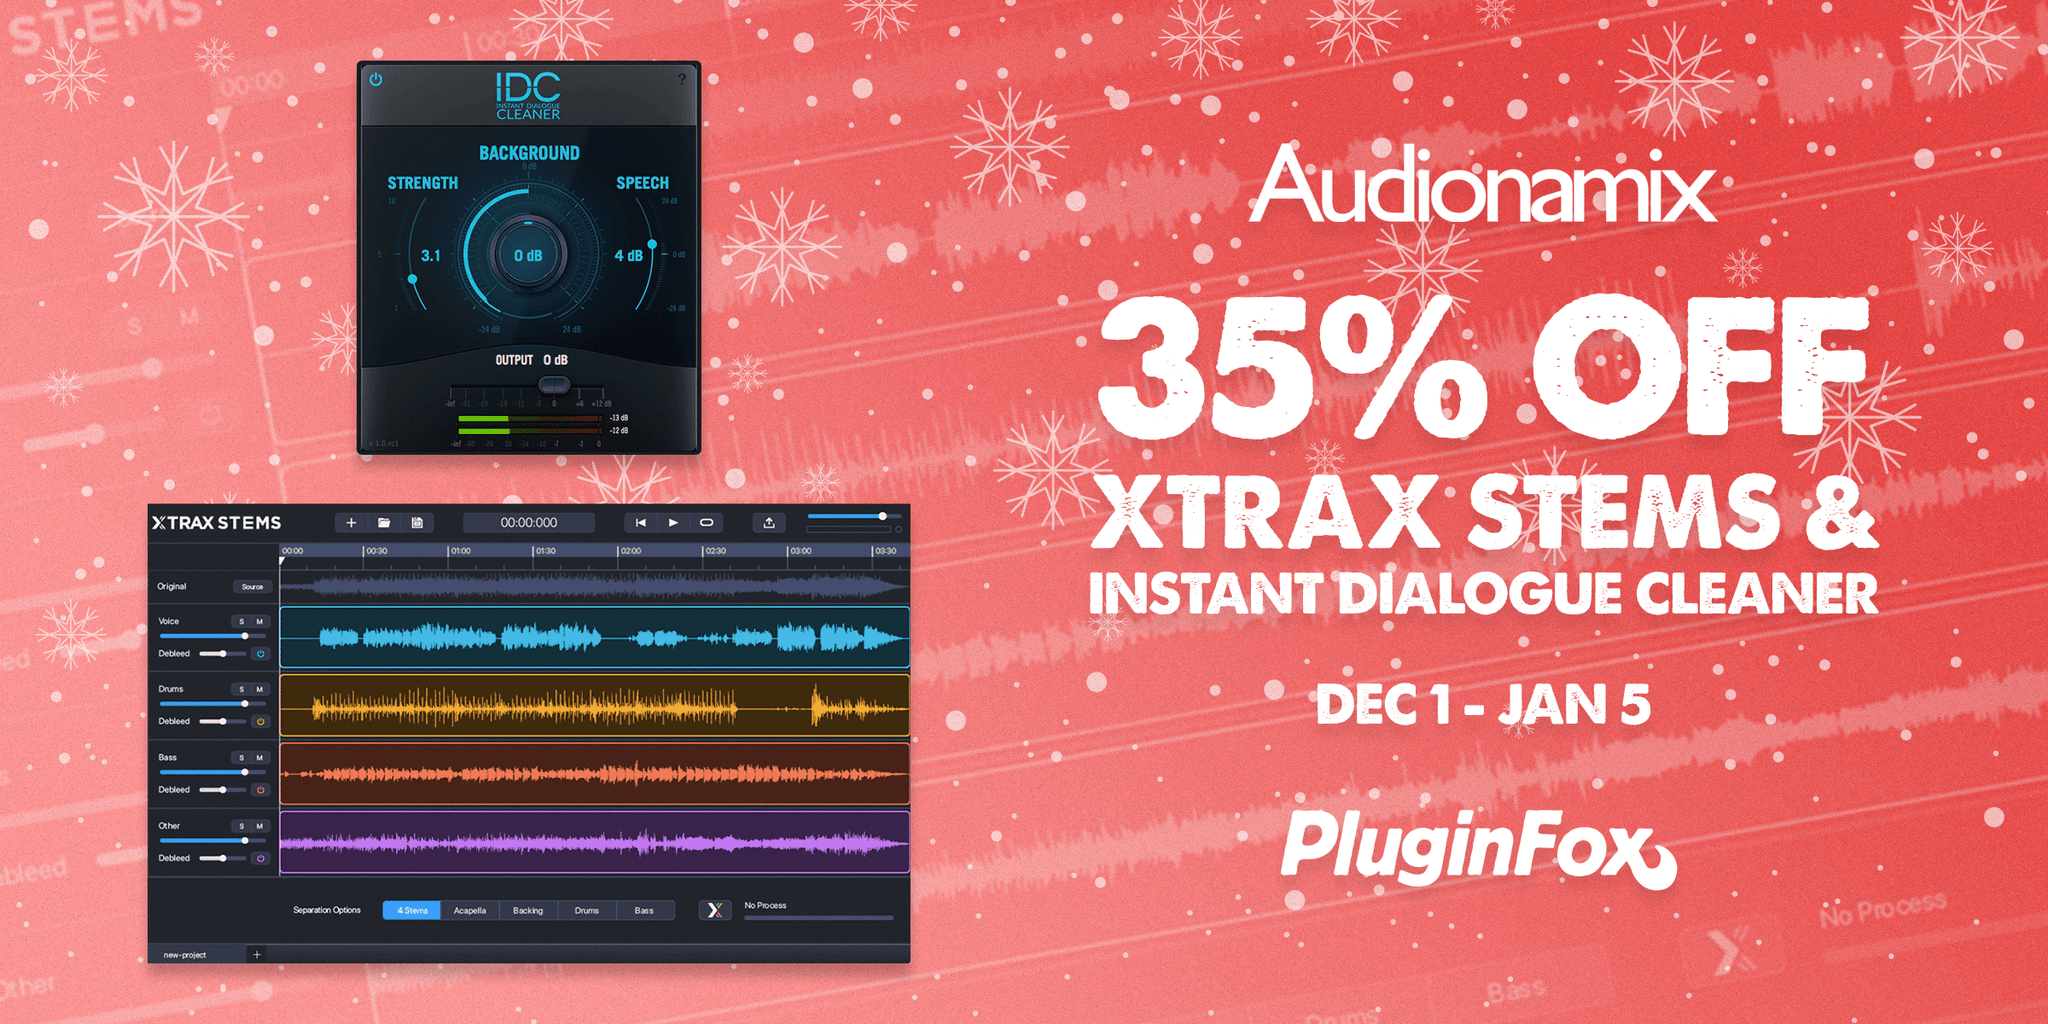 Audionamix Holiday Sale - Dec 1 - Jan 5